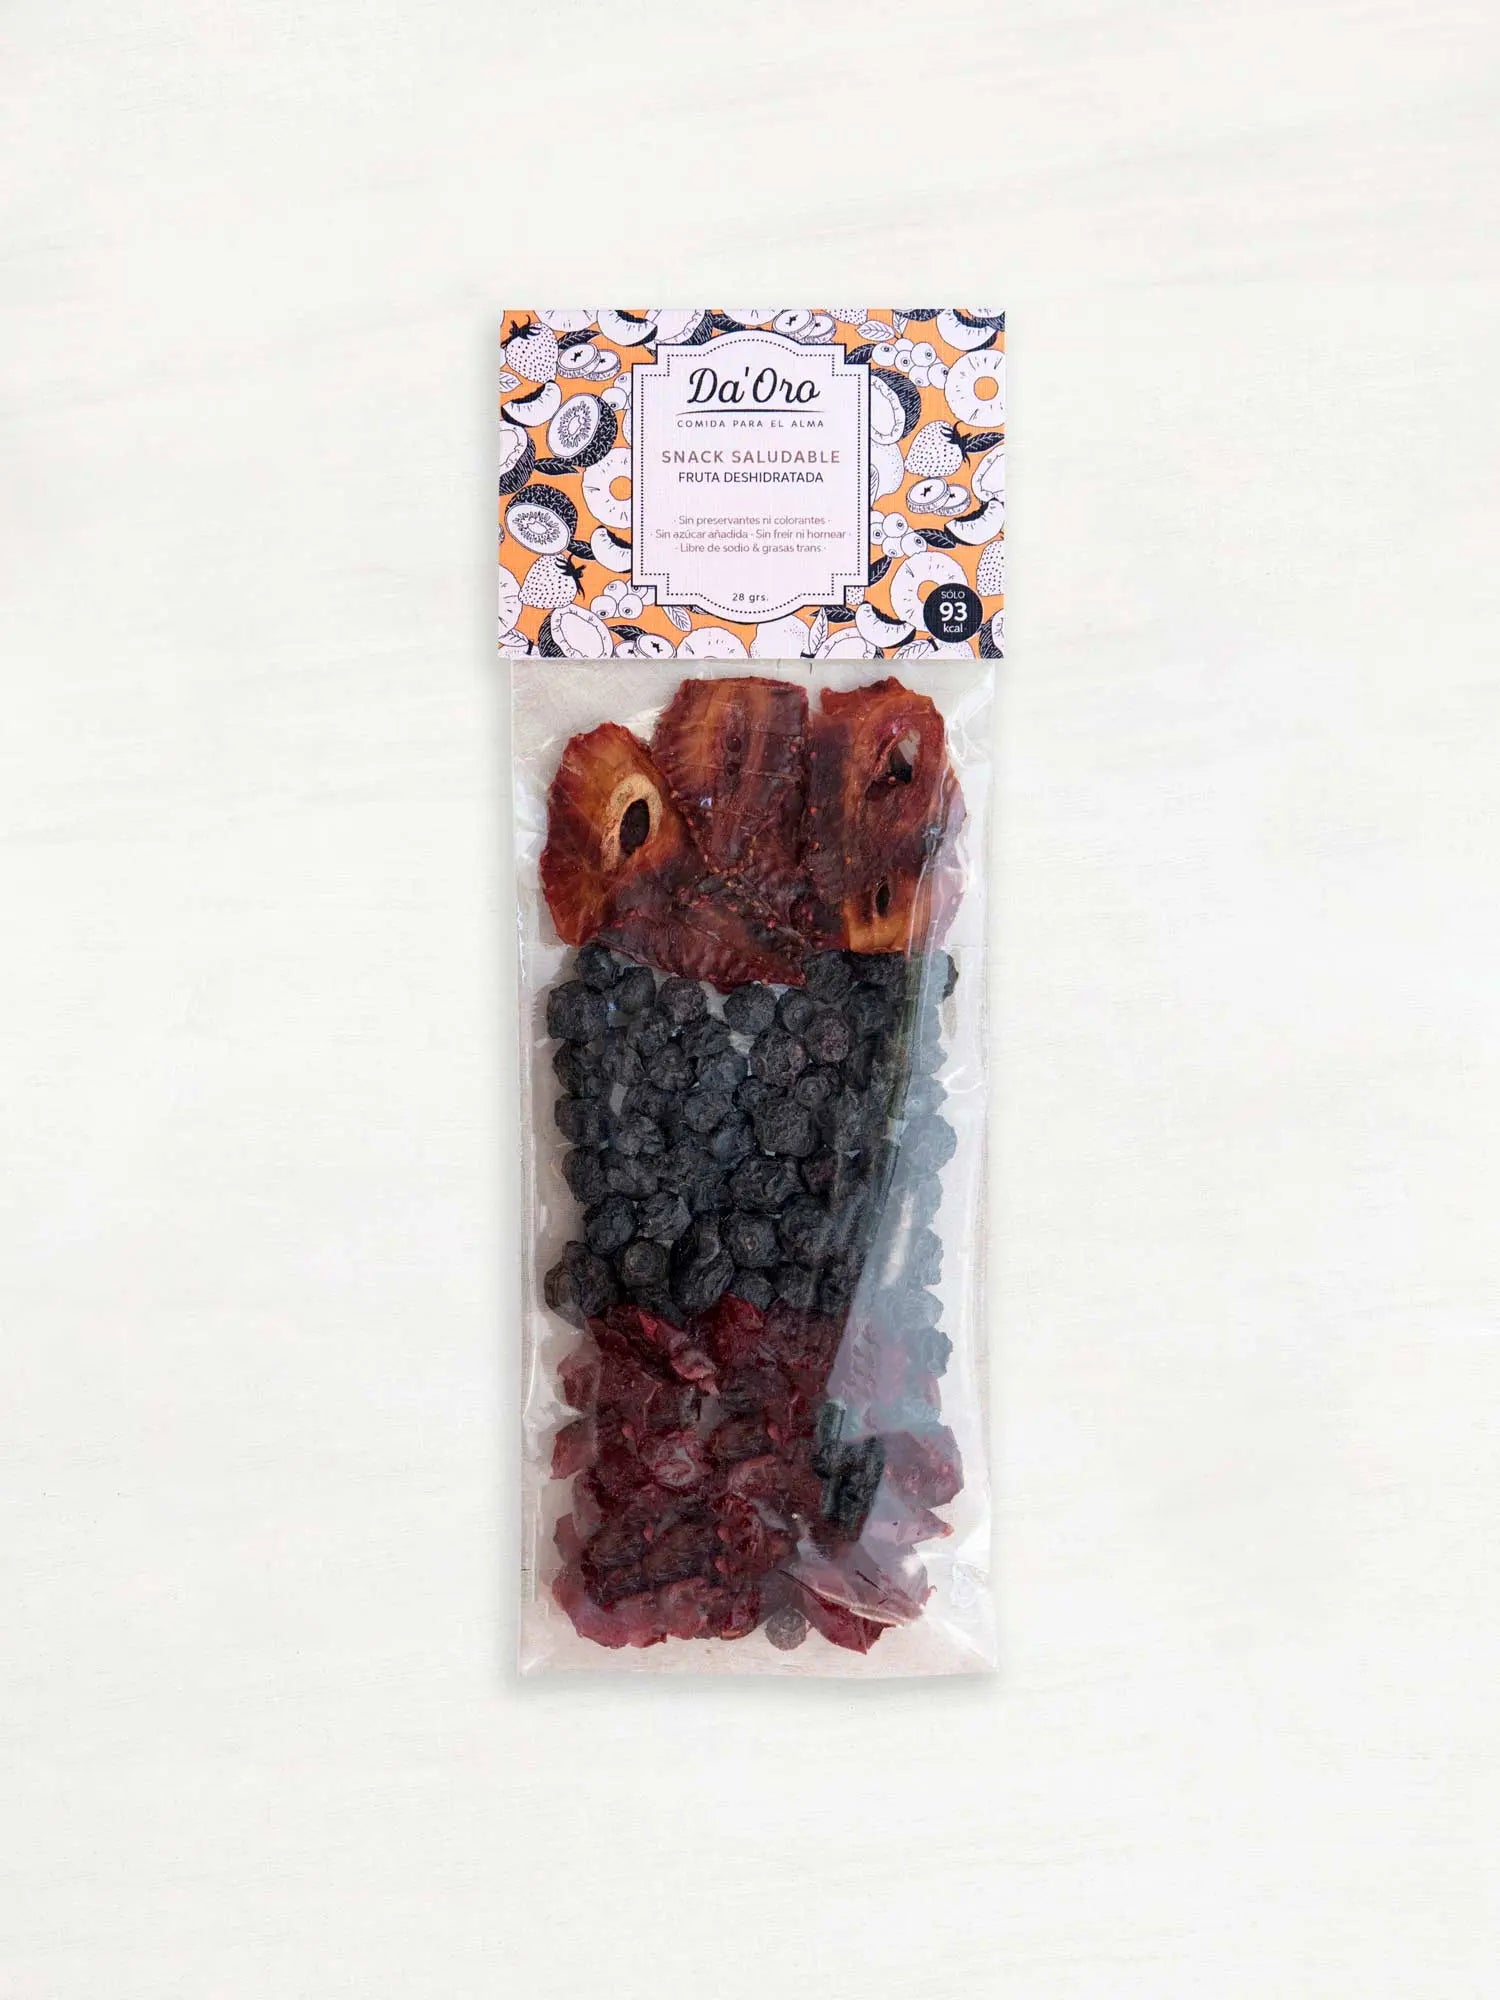 Bolsa con frutilla, arándano y cranberry deshidratado en formato snack marca Da'Oro